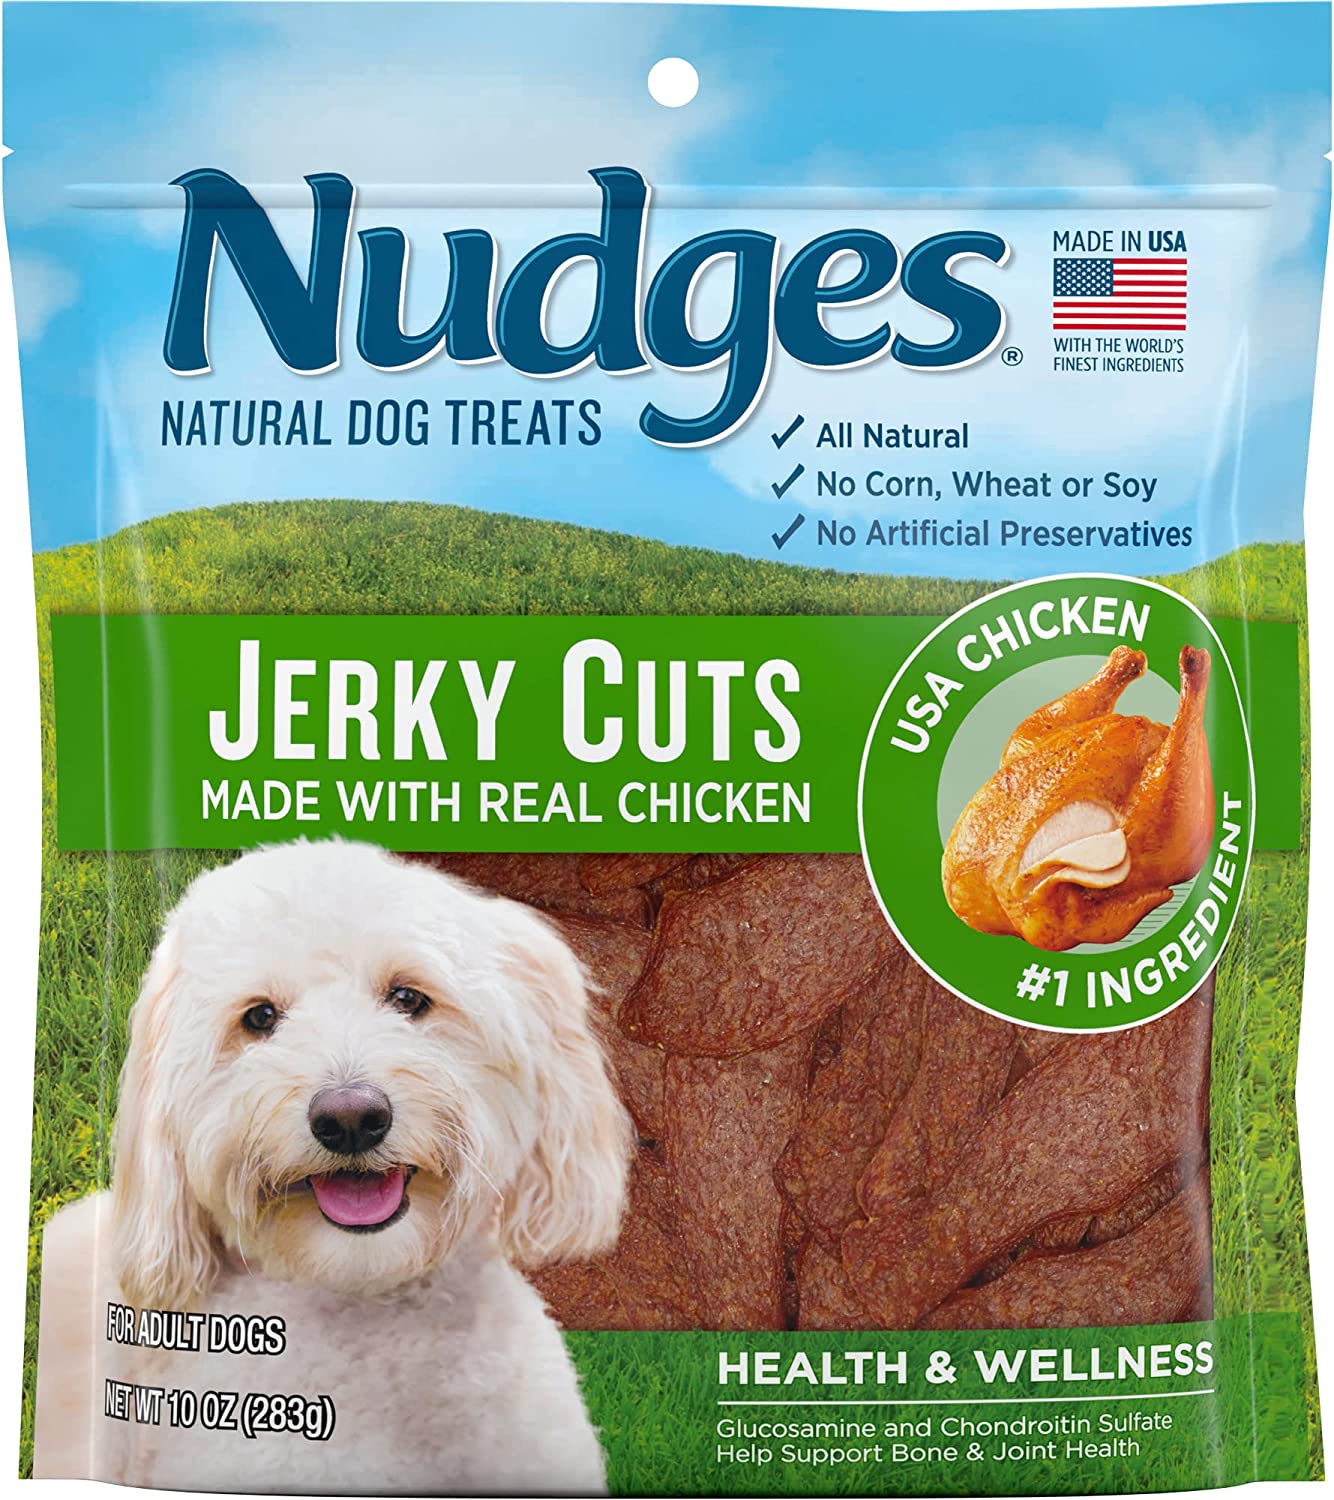 Best jerky treats for dogs